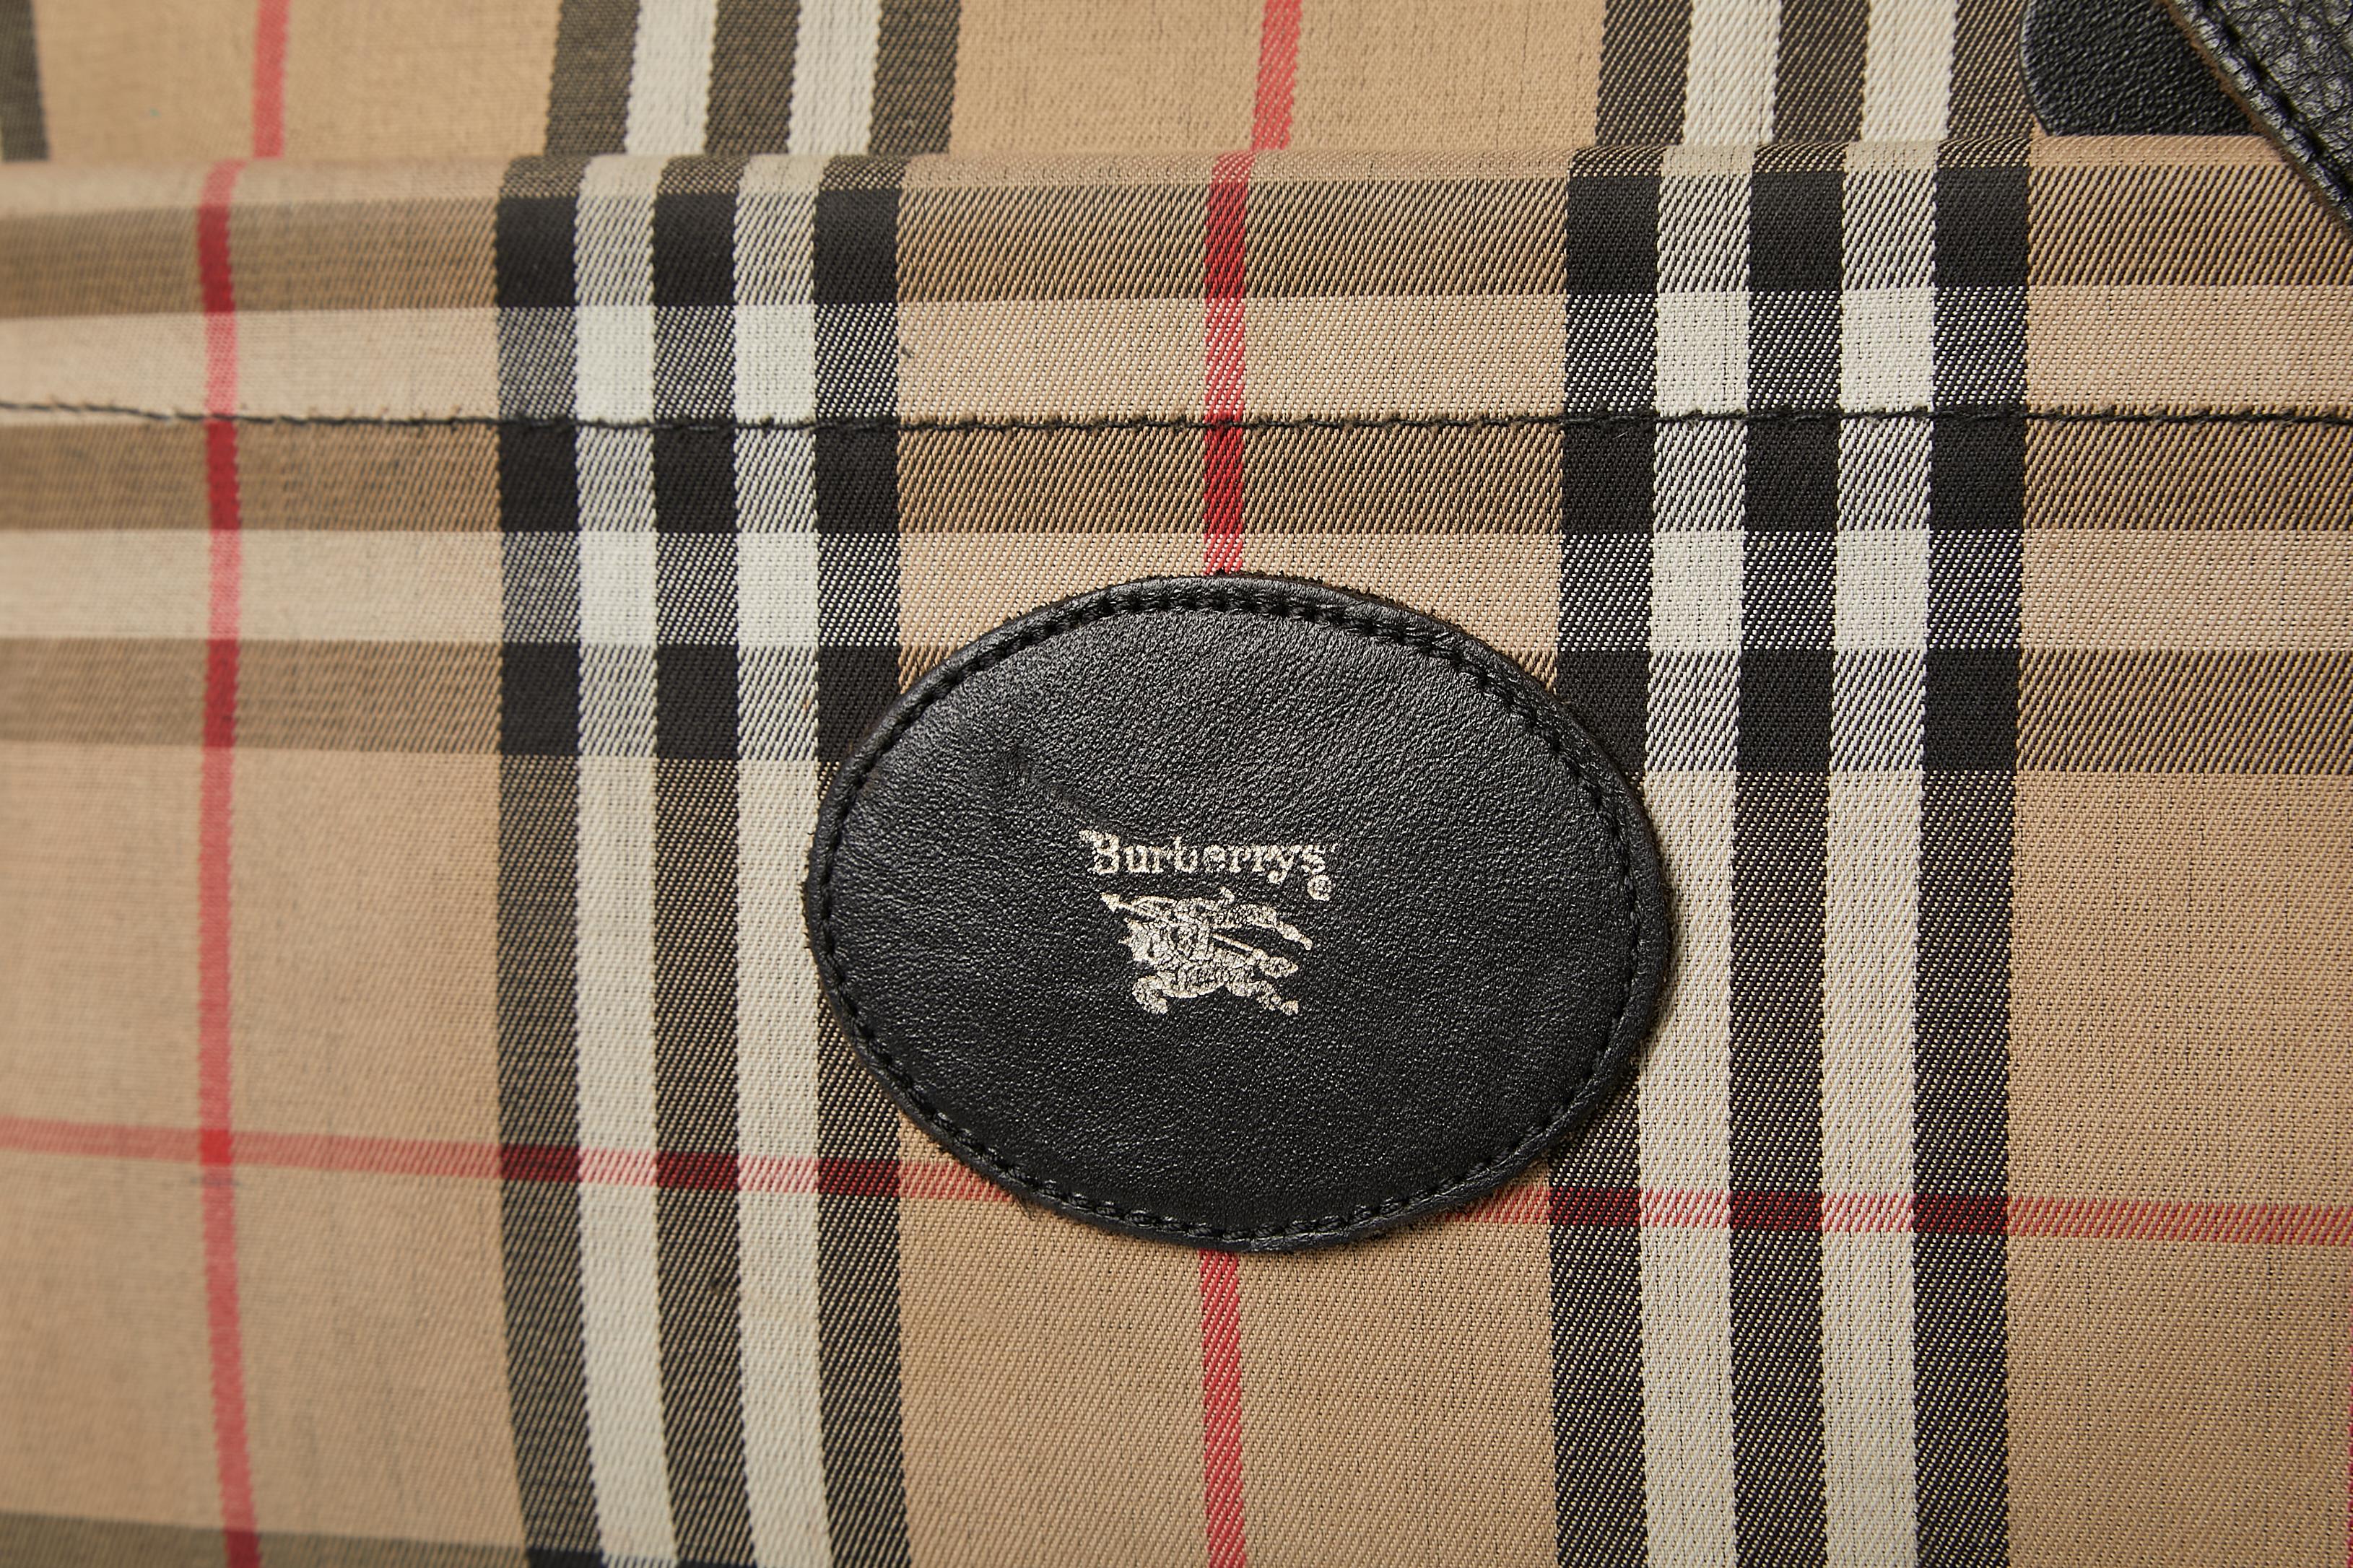 Grand sac messager en canevas écossais avec 3 compartiments fermés par un zip . Une poche extérieure avec fermeture éclair. Tuyauterie. 
TAILLE 25 cm ( hauteur ) 30 cm ( largeur ) 18cm ( profondeur ) 